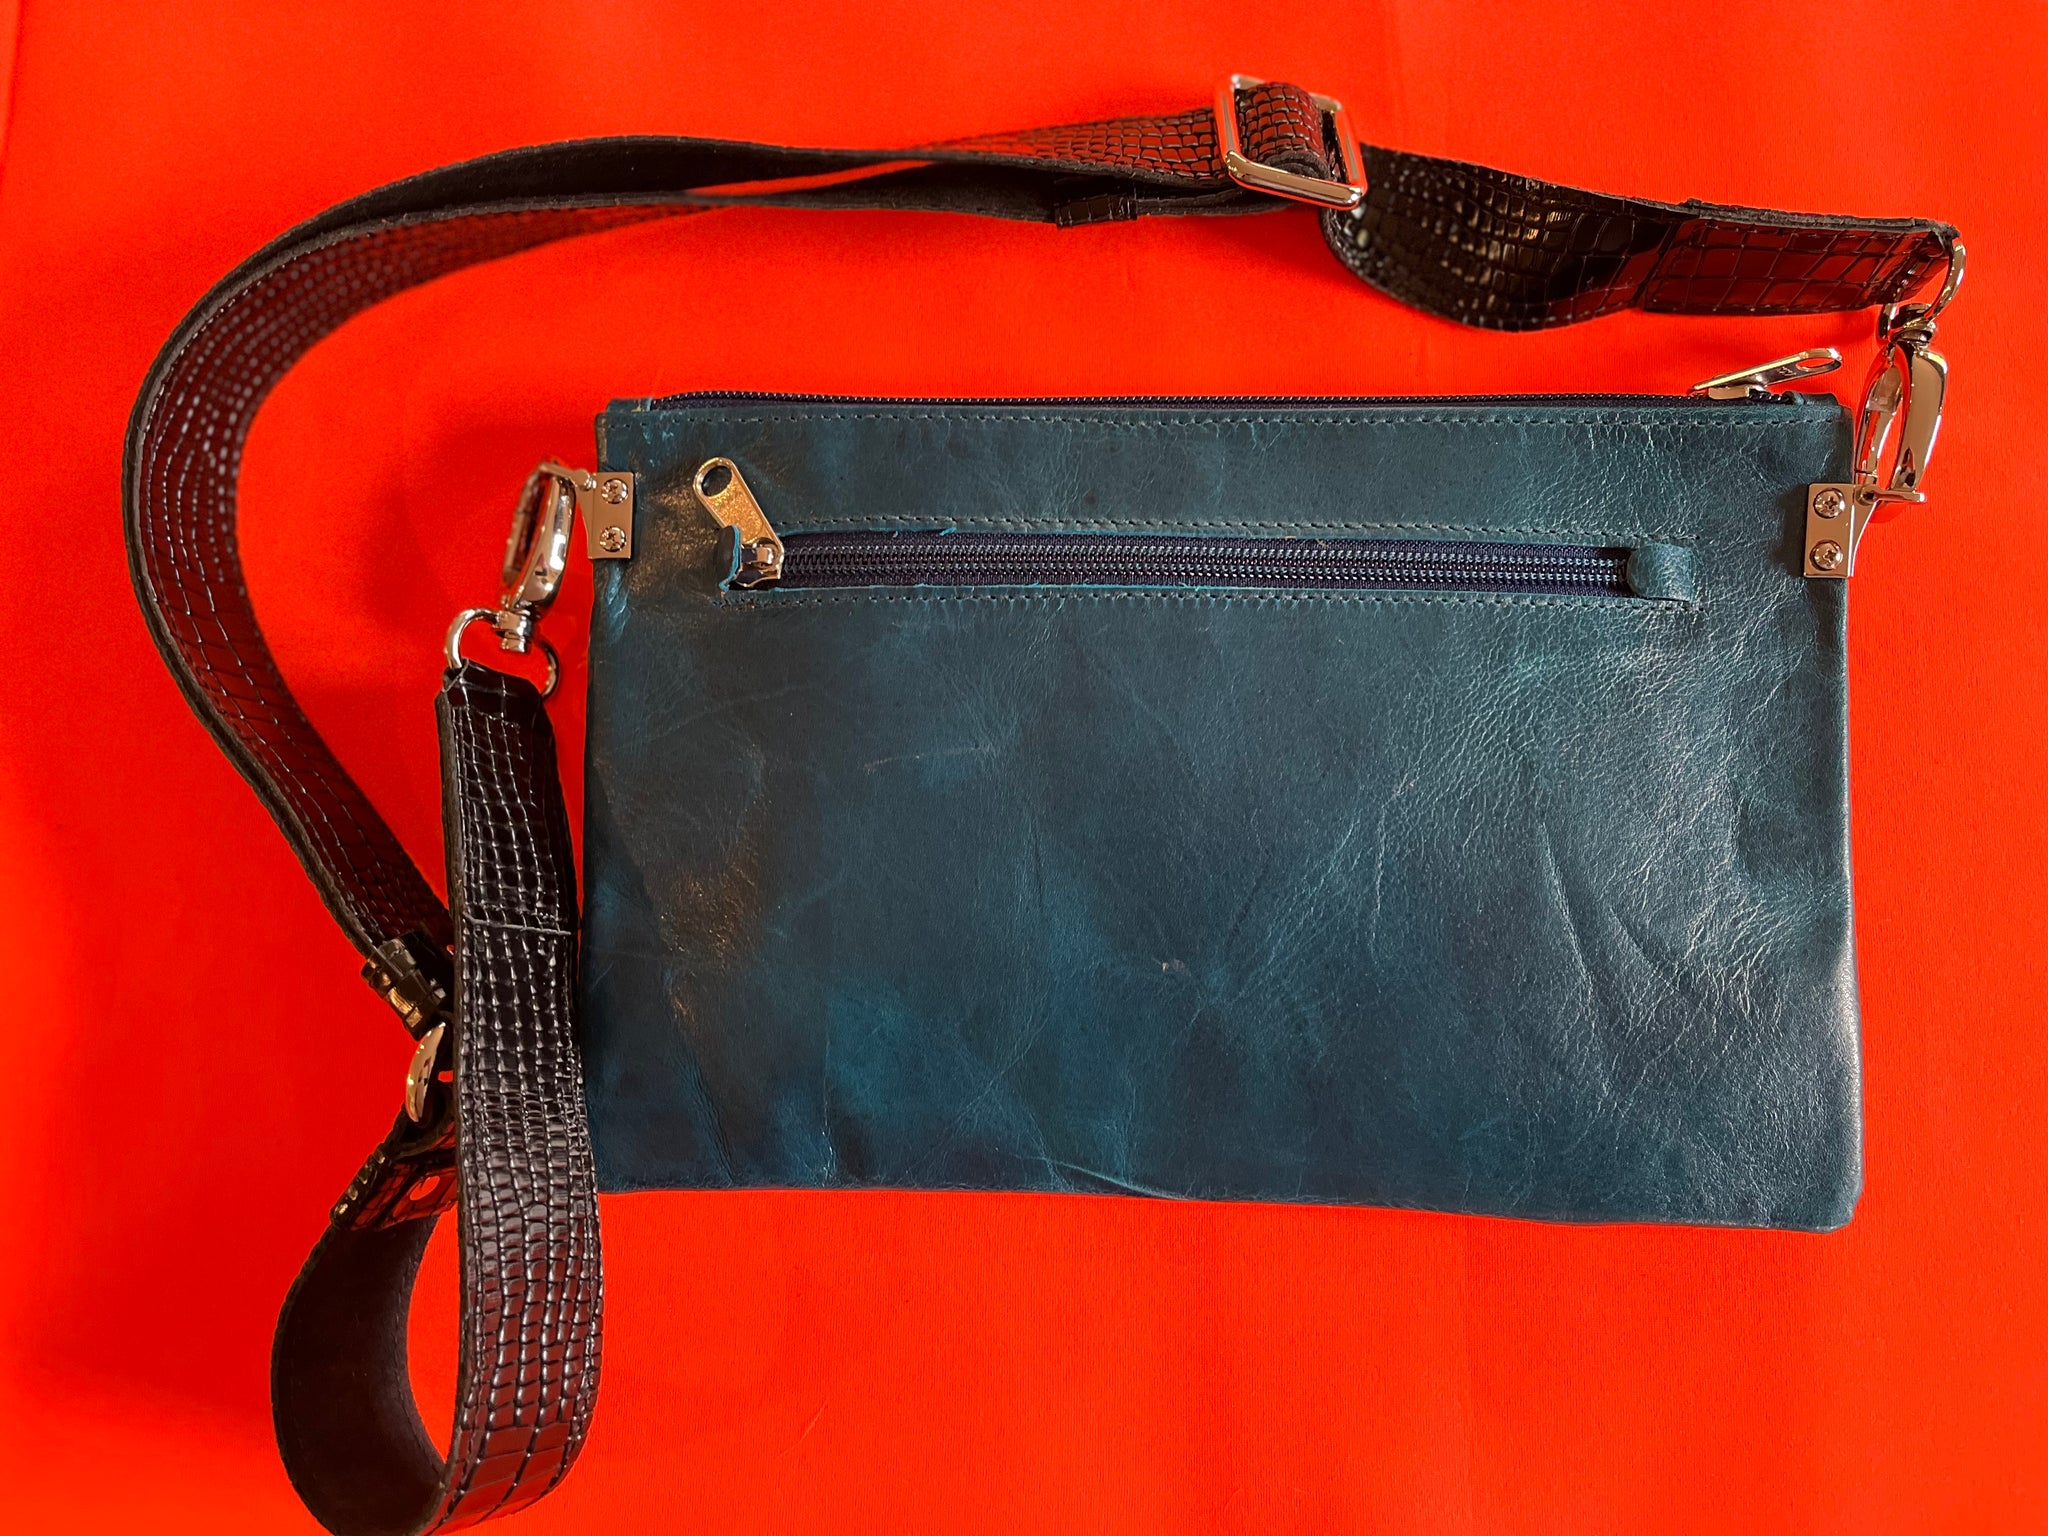 Zara crossbody bag featuring cobolt teal Kangaroo leather